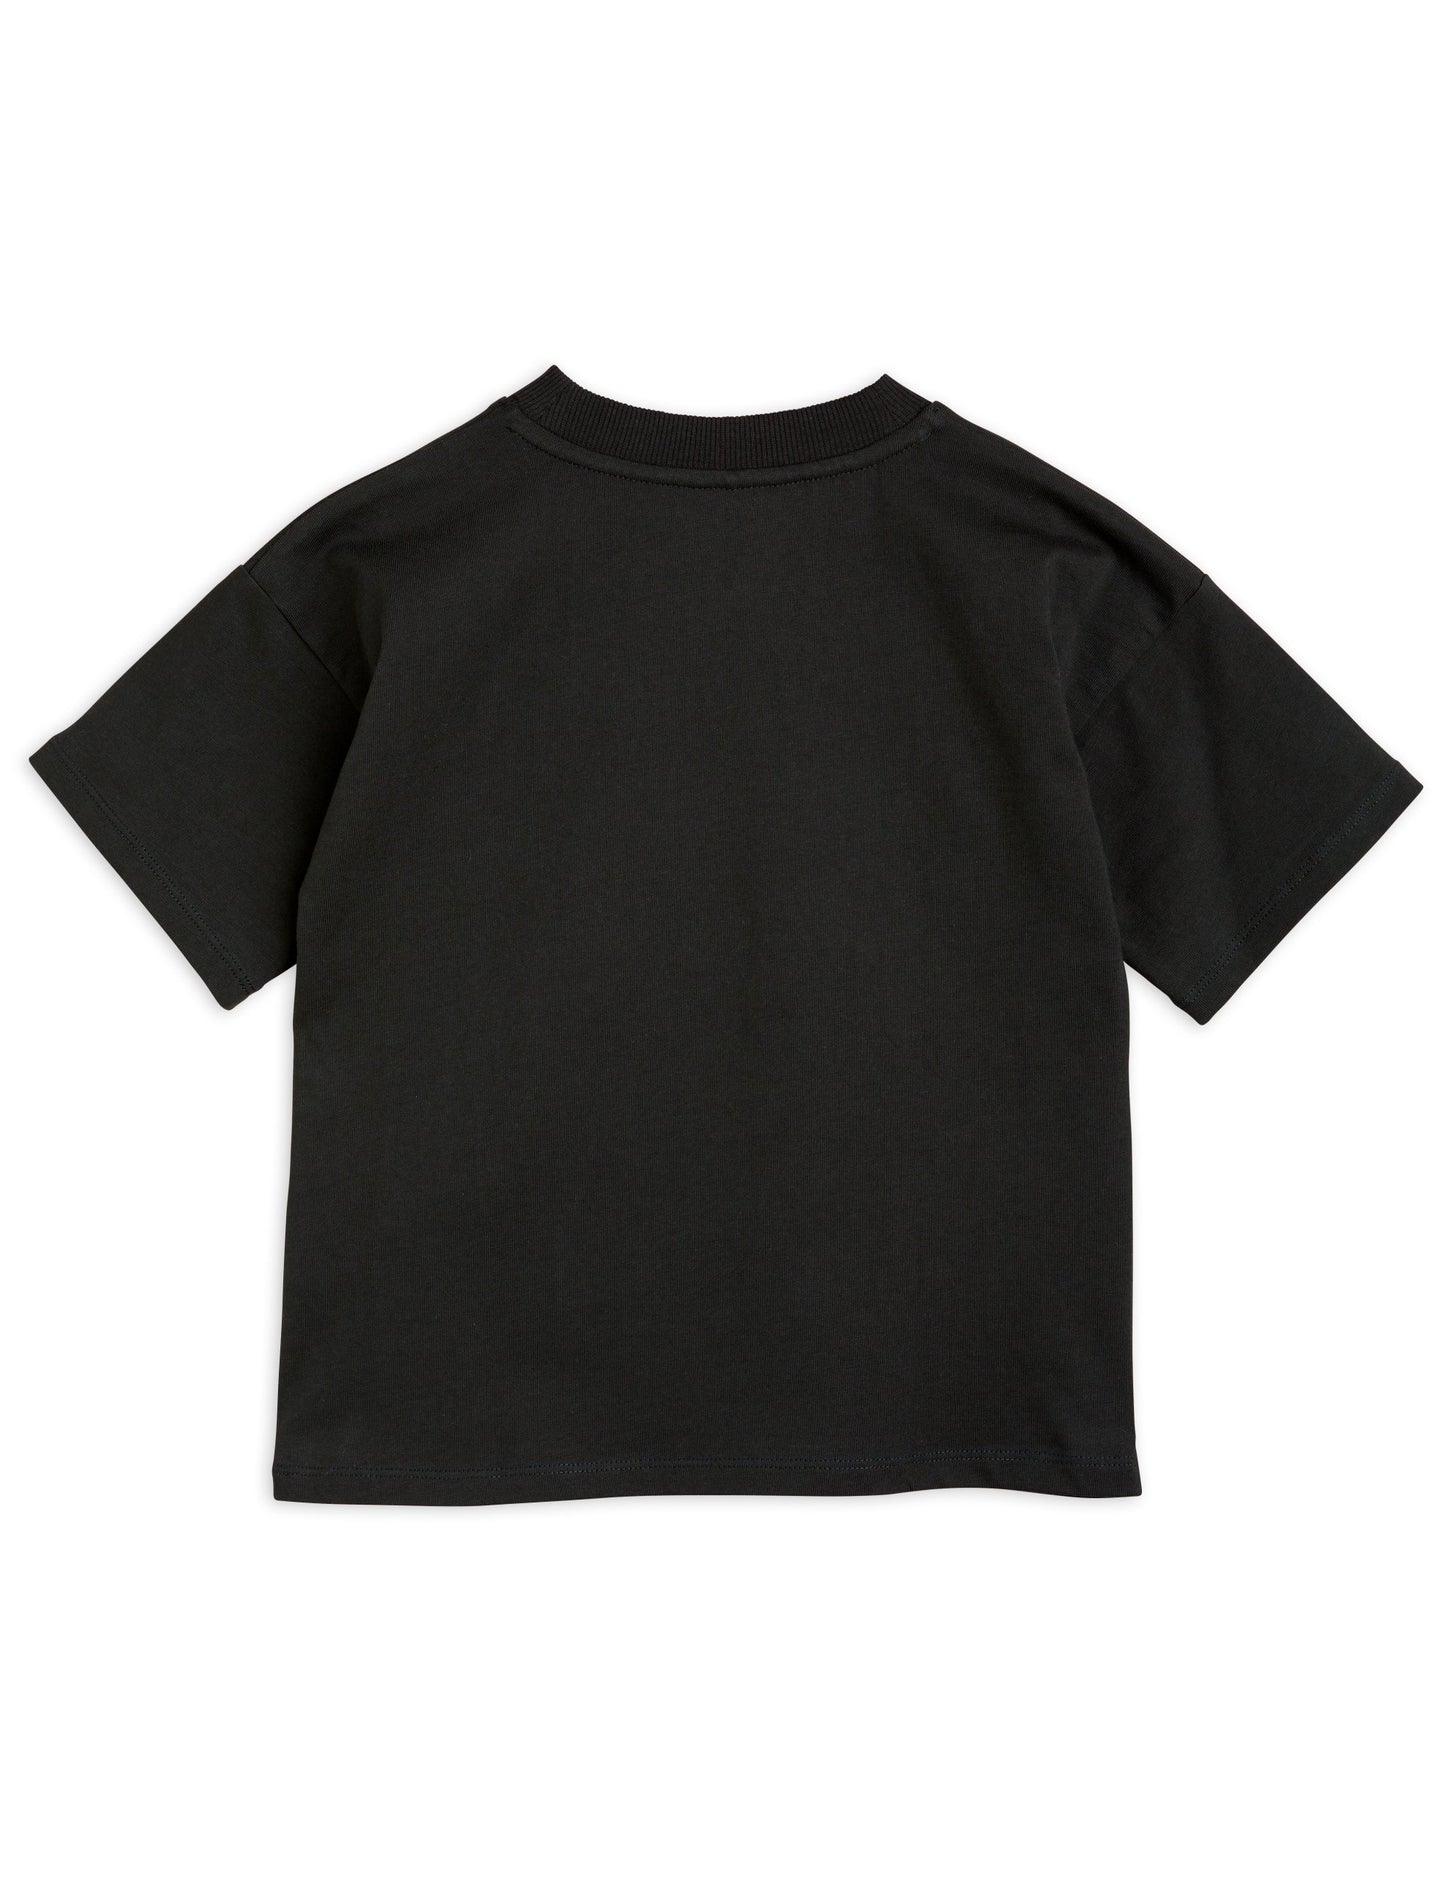 Mini Rodini Adored T-Shirt - Black